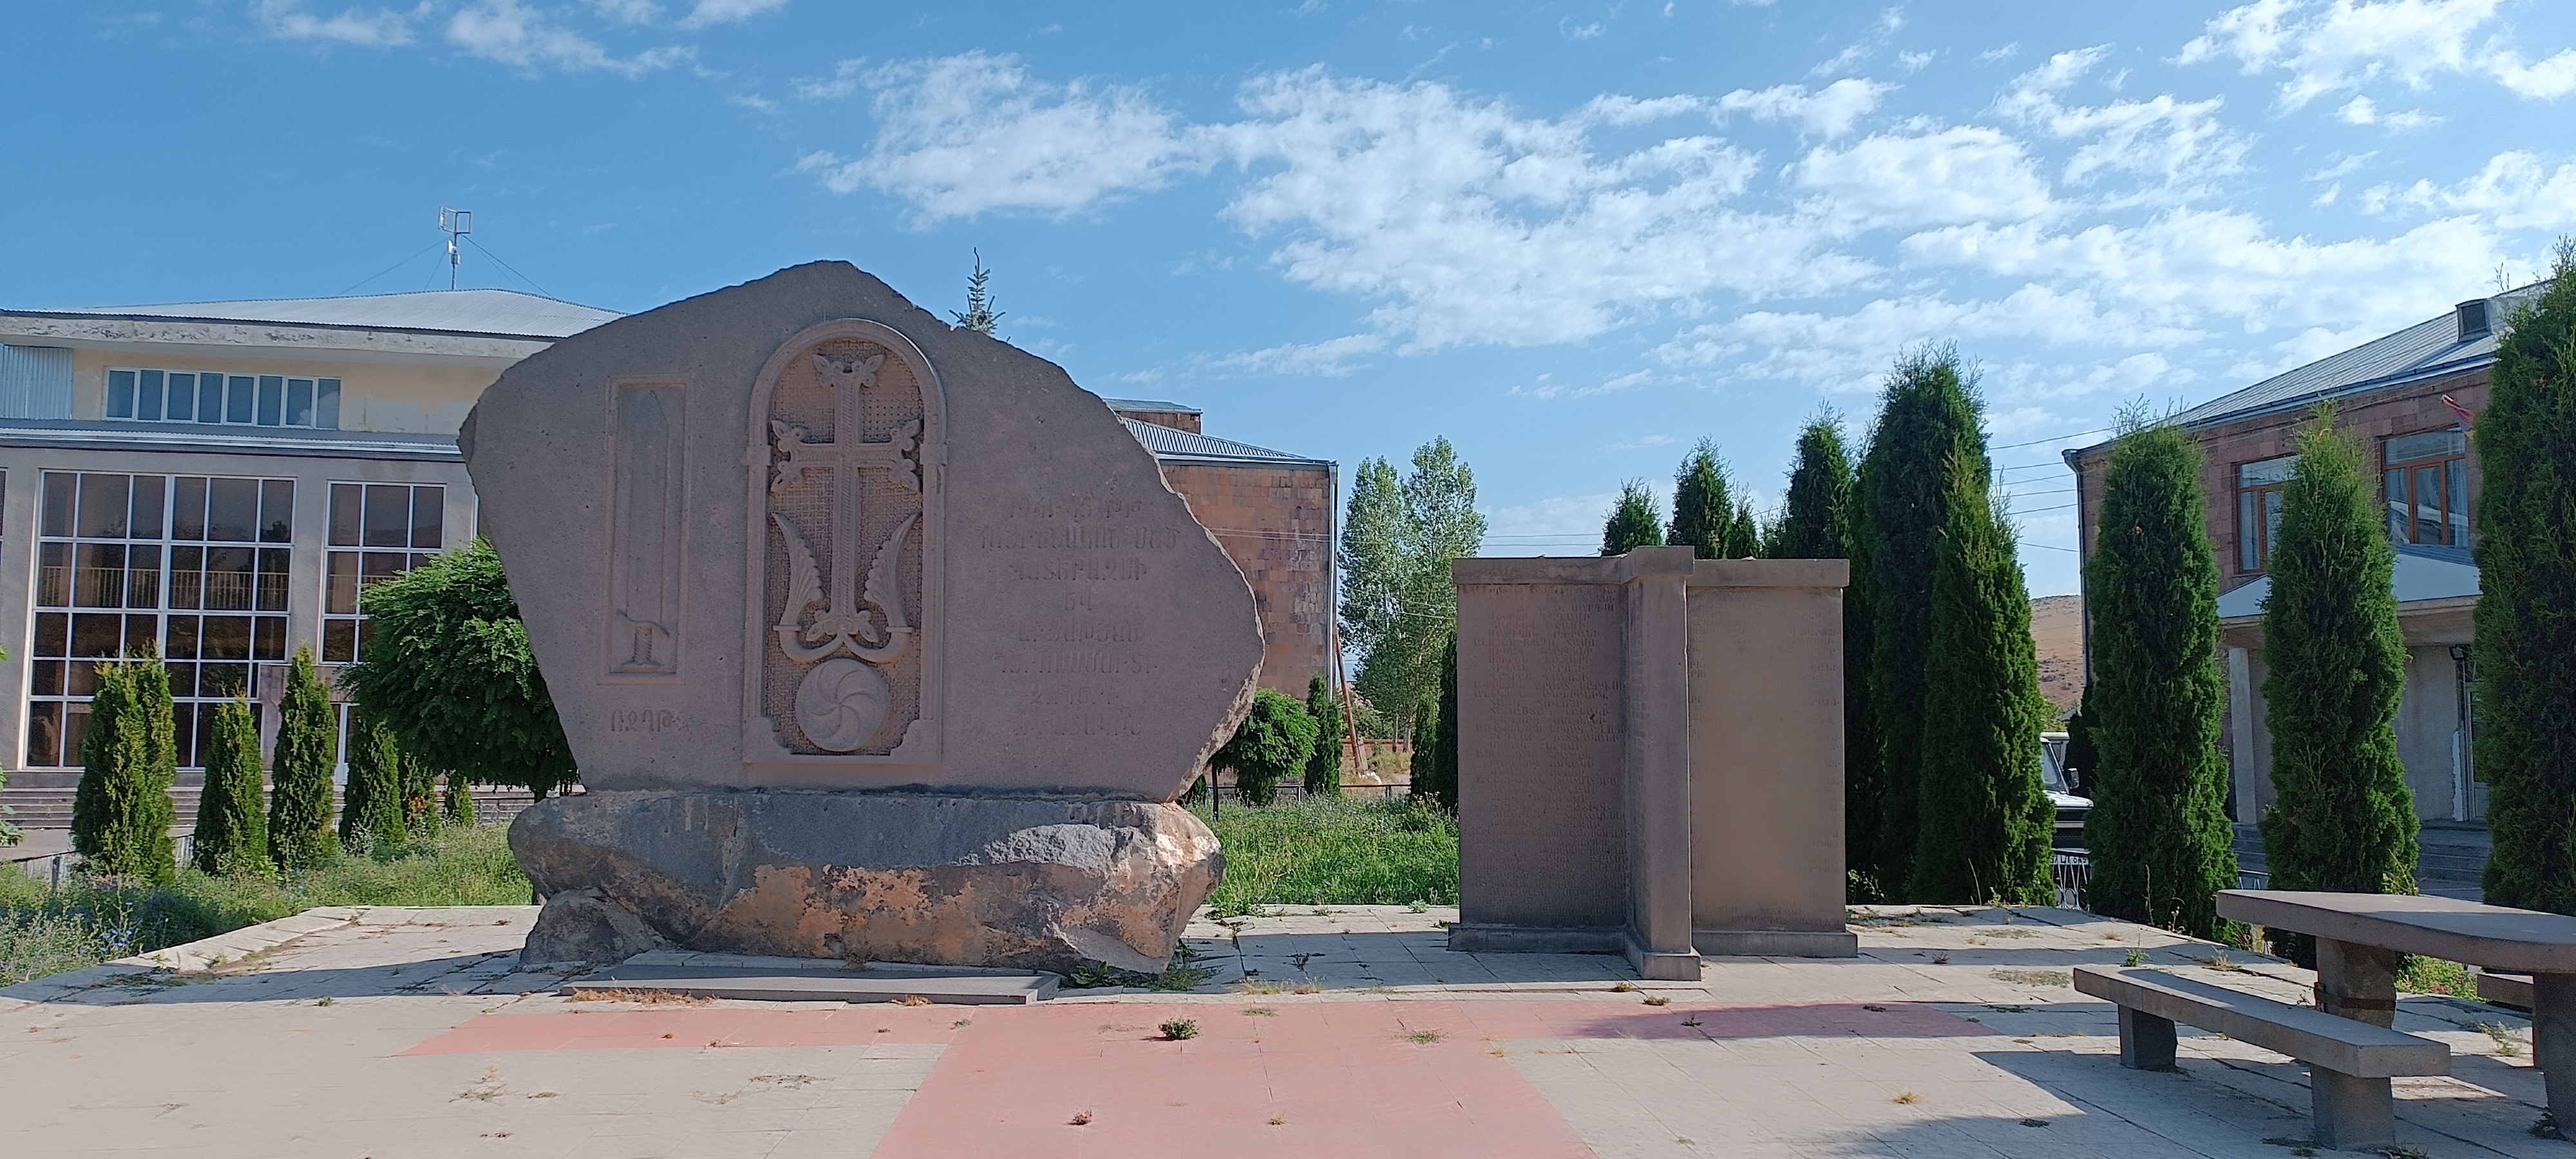 1941-1945թթ․ Հայրենական Մեծ պատերազմի զոհերի հիշատակին նվիրված հուշարձան։